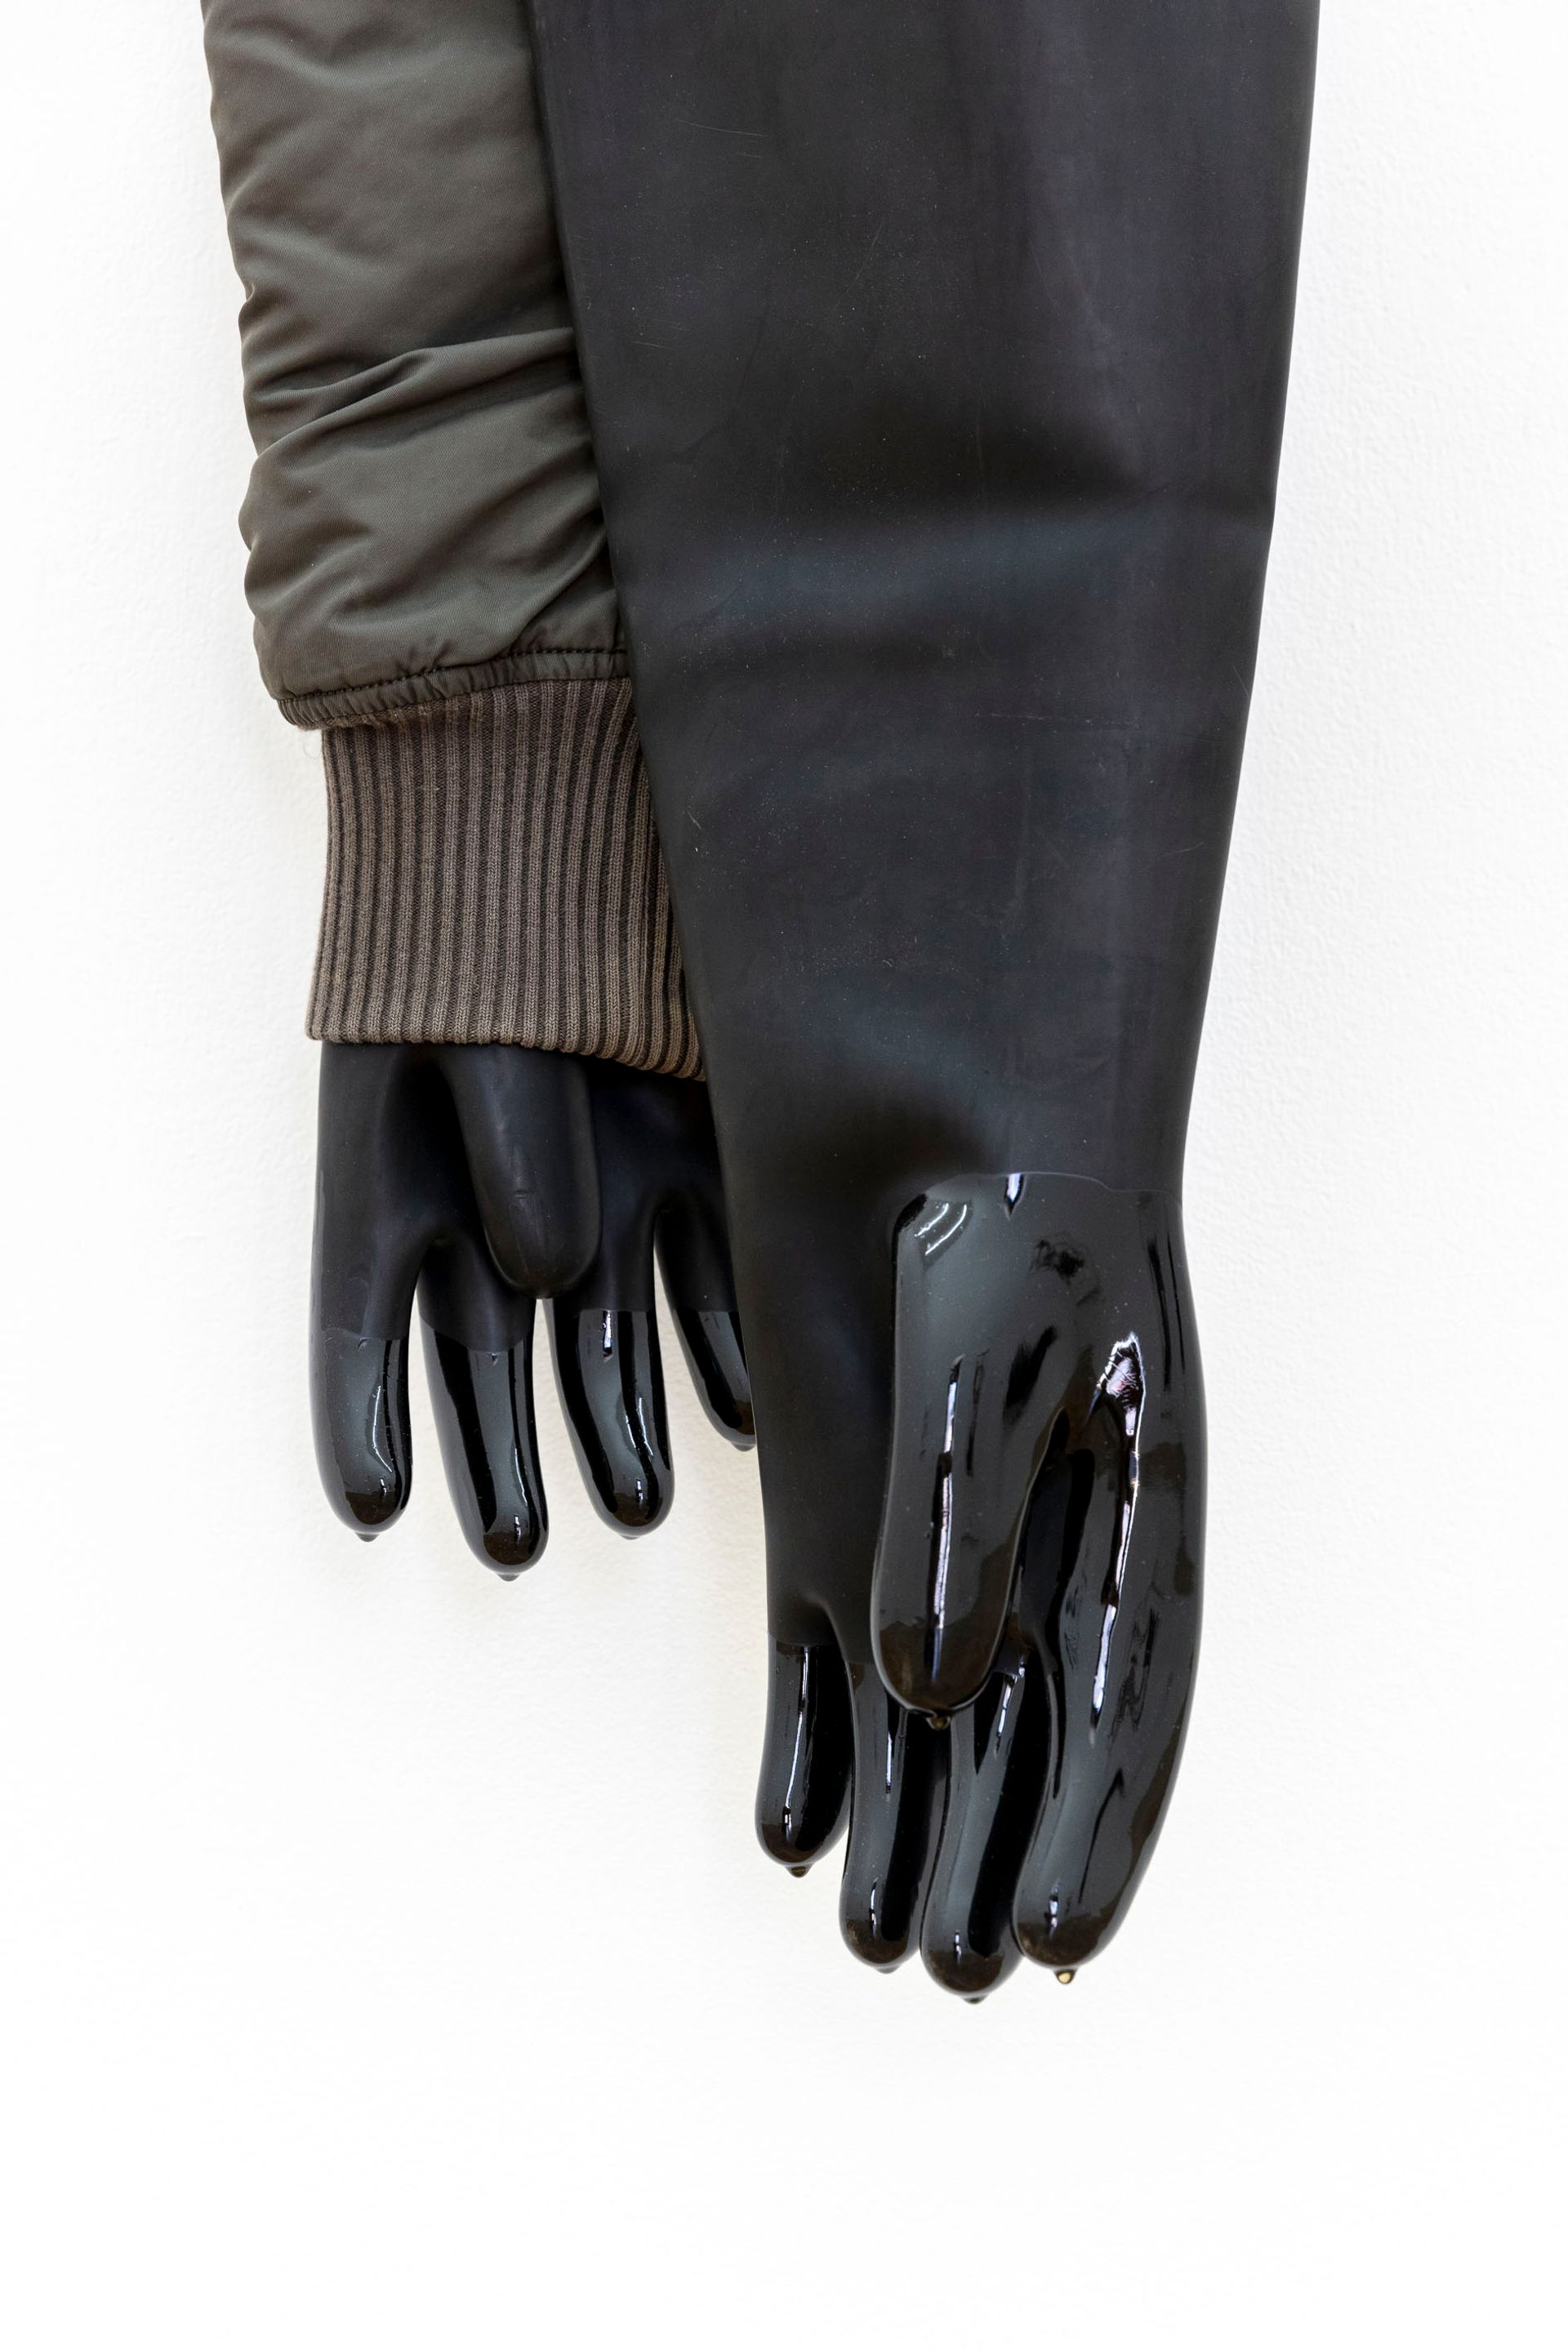 Eher geht ein Kamel, 2023, second-hand clothes, rubber gloves, epoxy, 120 × 15 × 15 cm